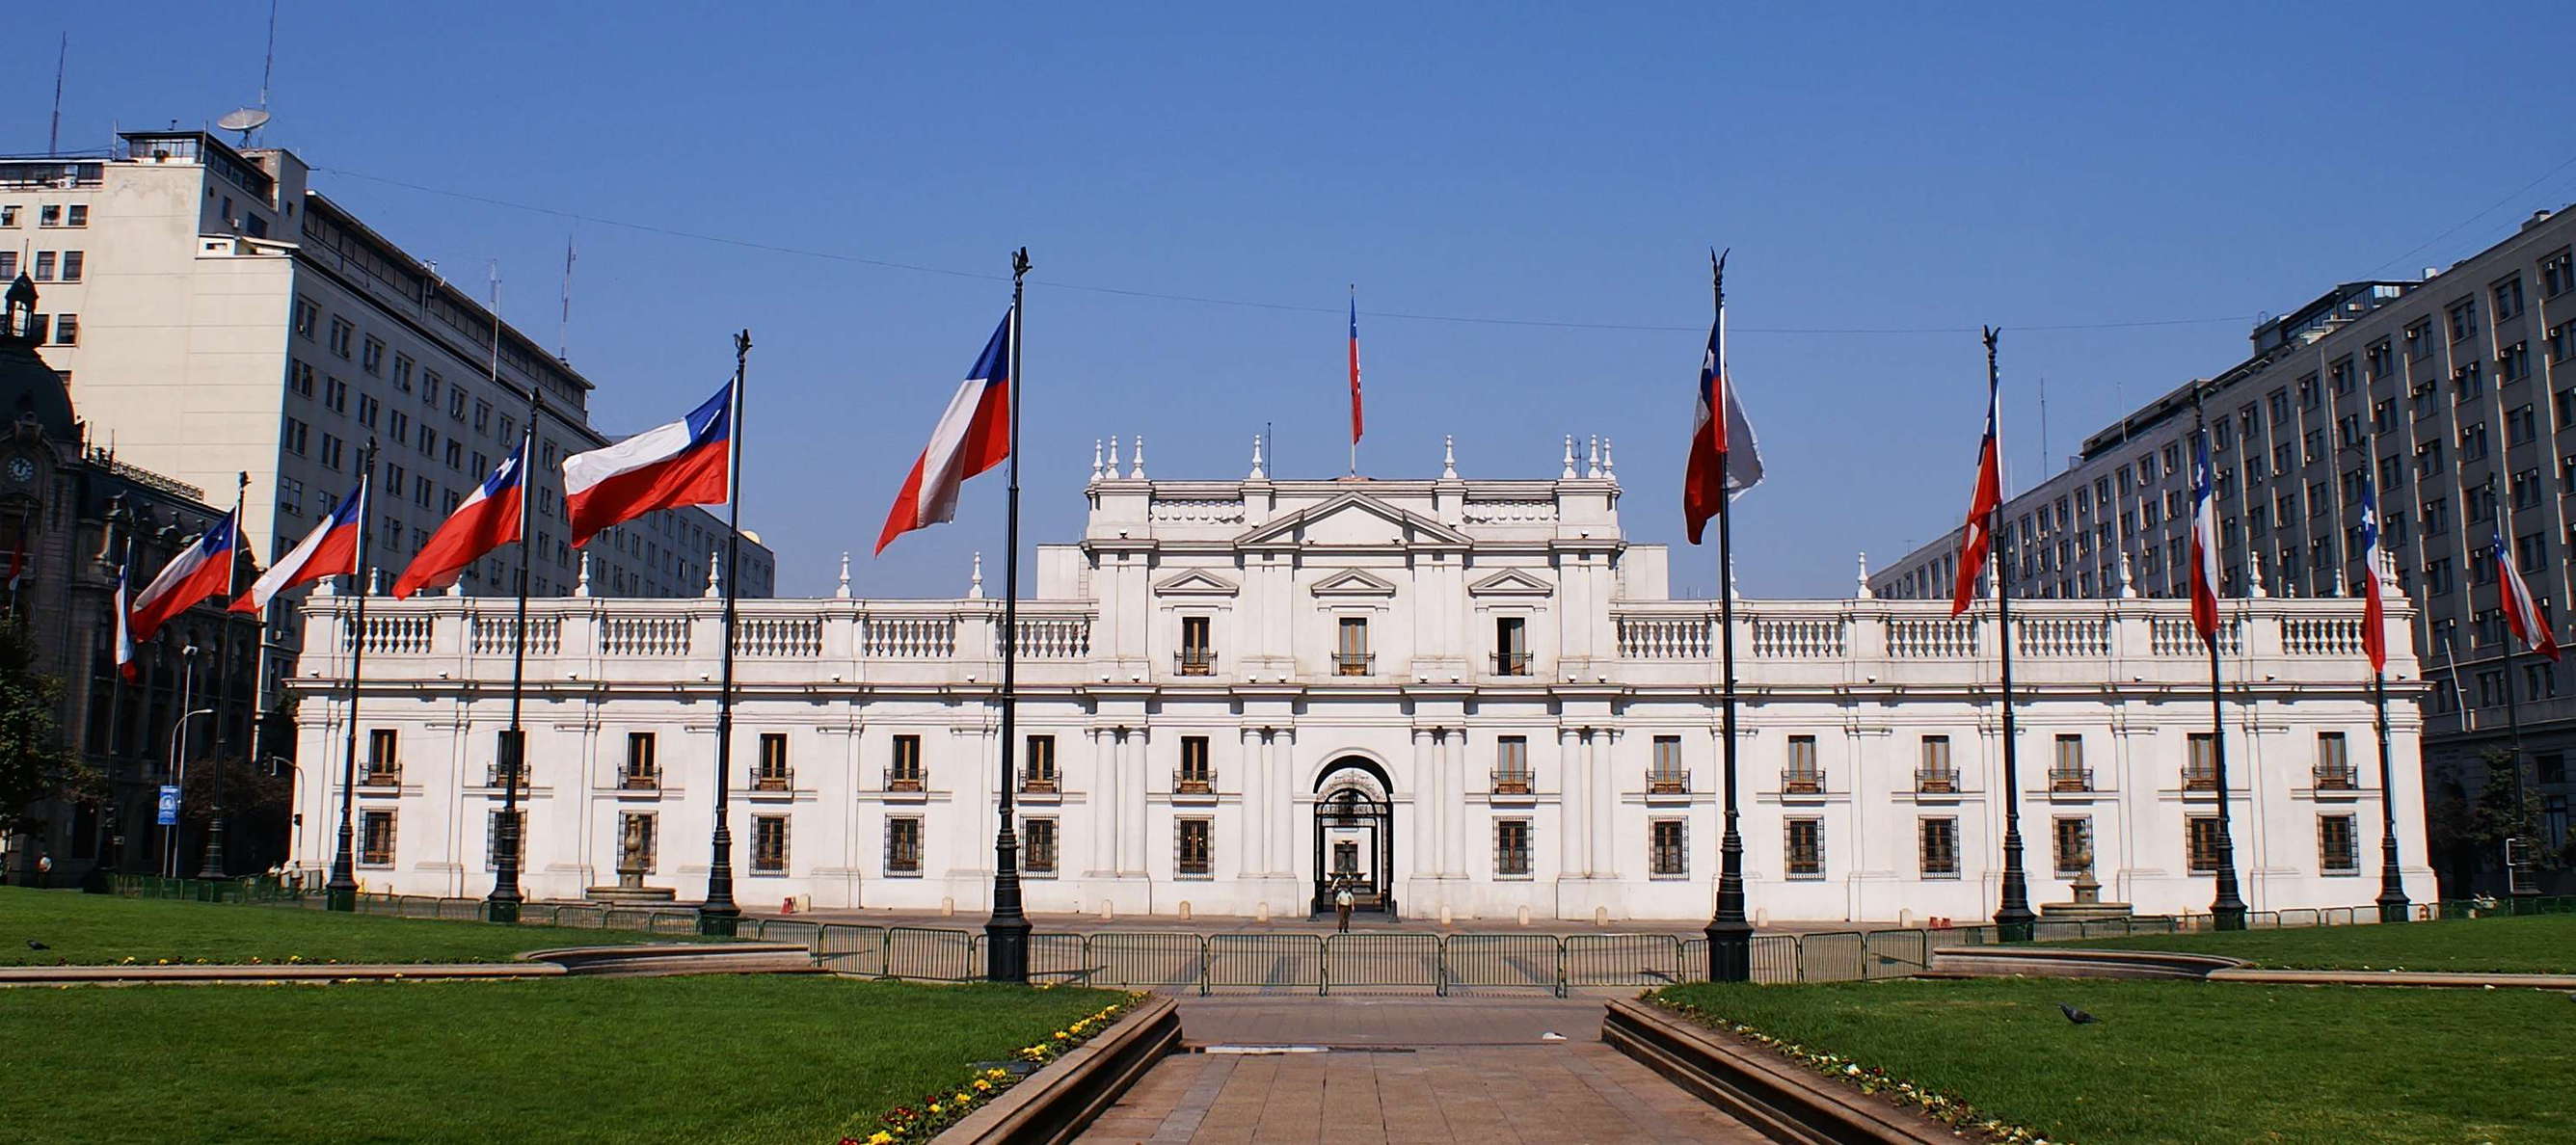 Santiago de Chile | La Moneda